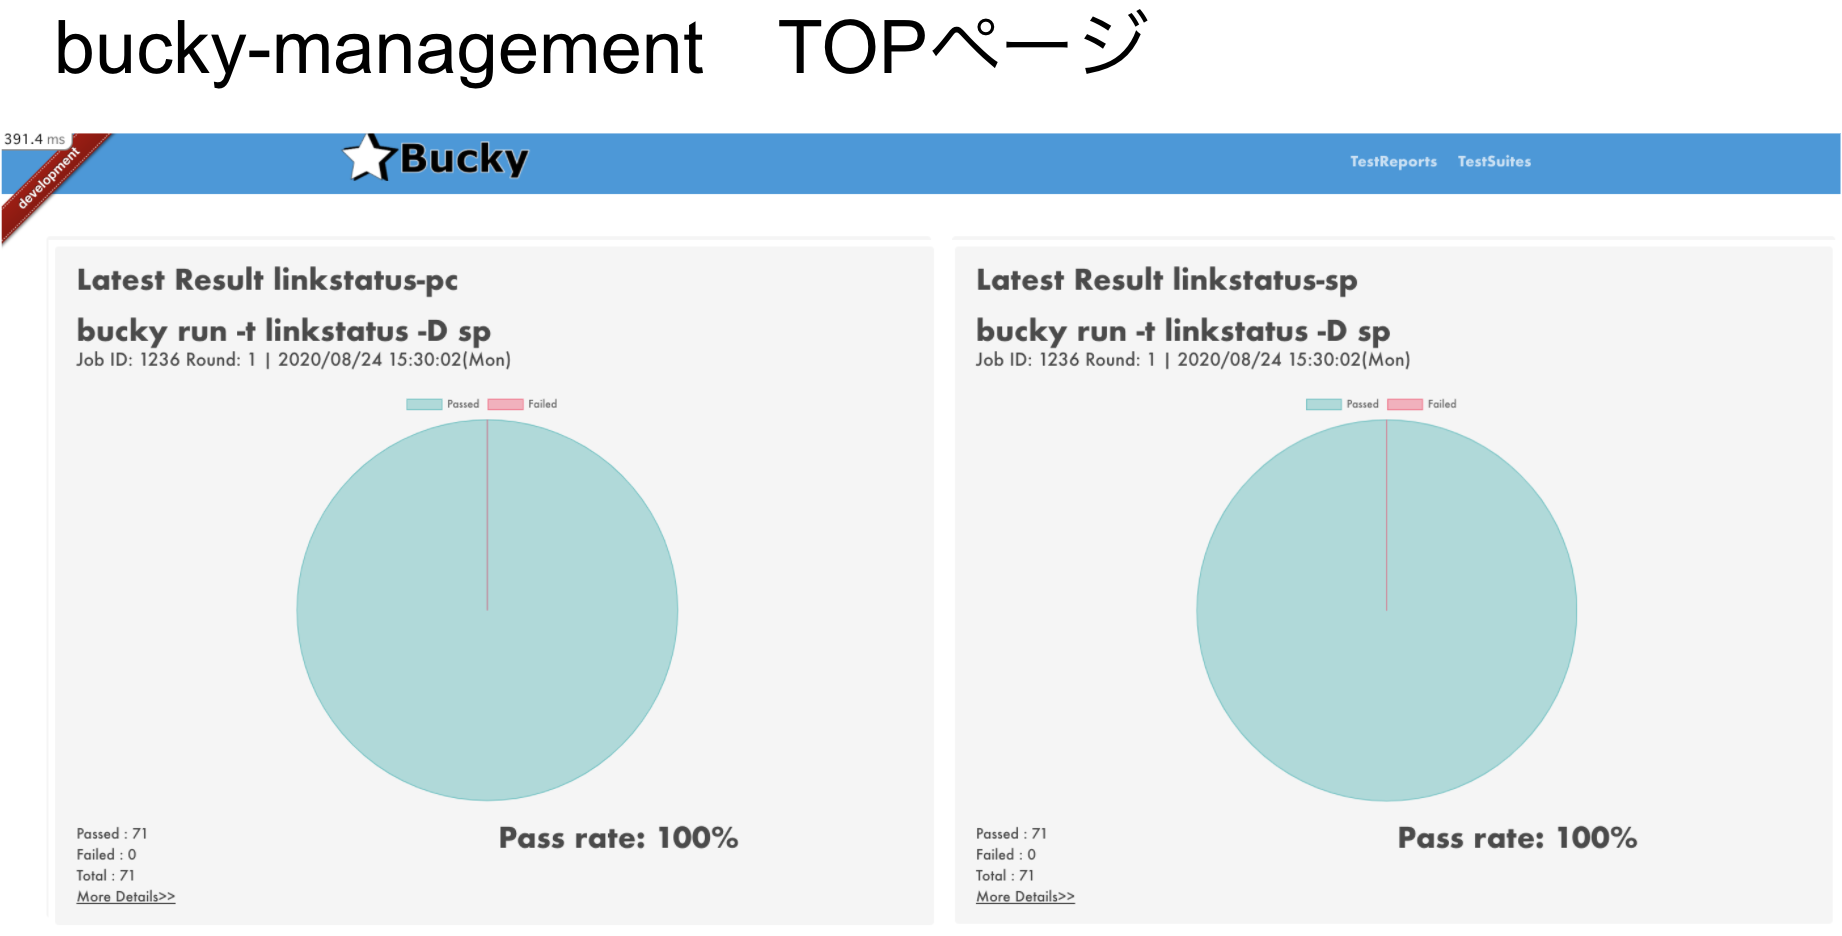 bucky-management TOP